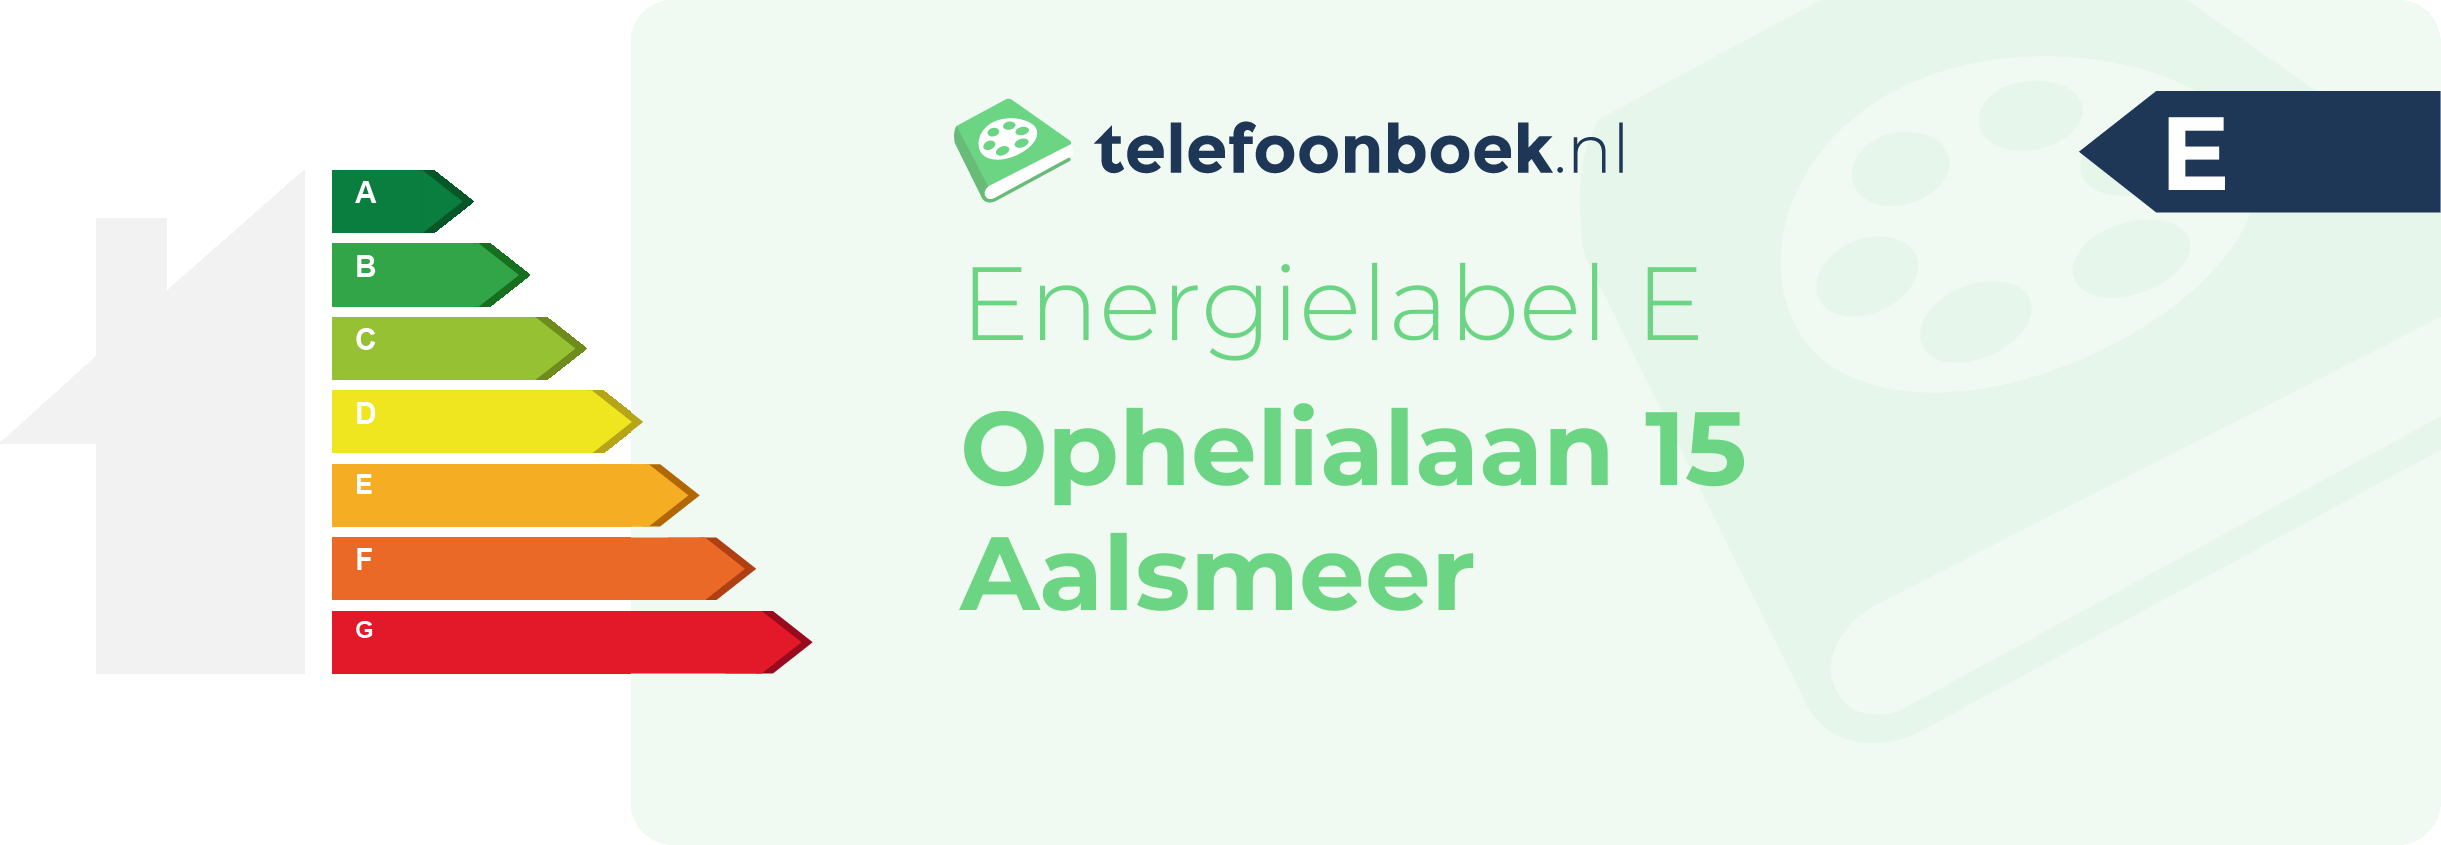 Energielabel Ophelialaan 15 Aalsmeer